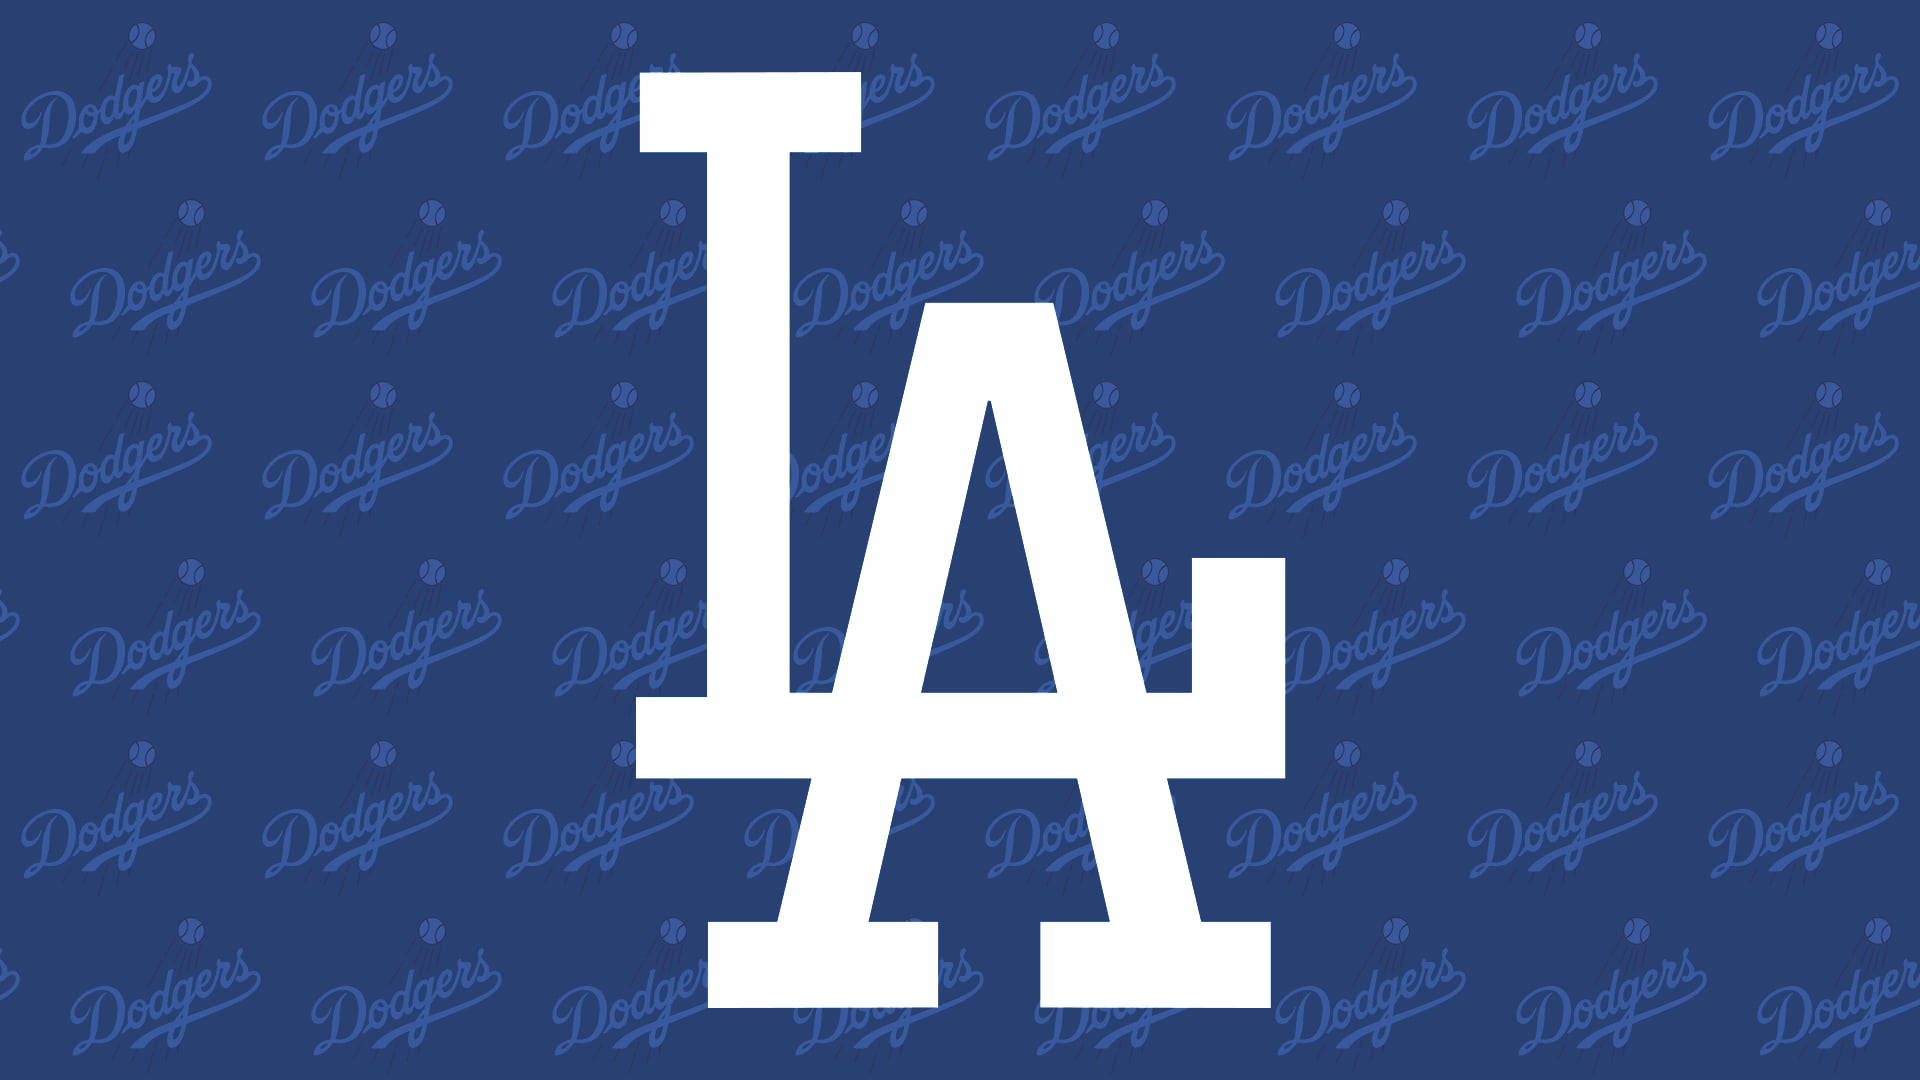 La Dodgers Logo Pattern Wallpaper